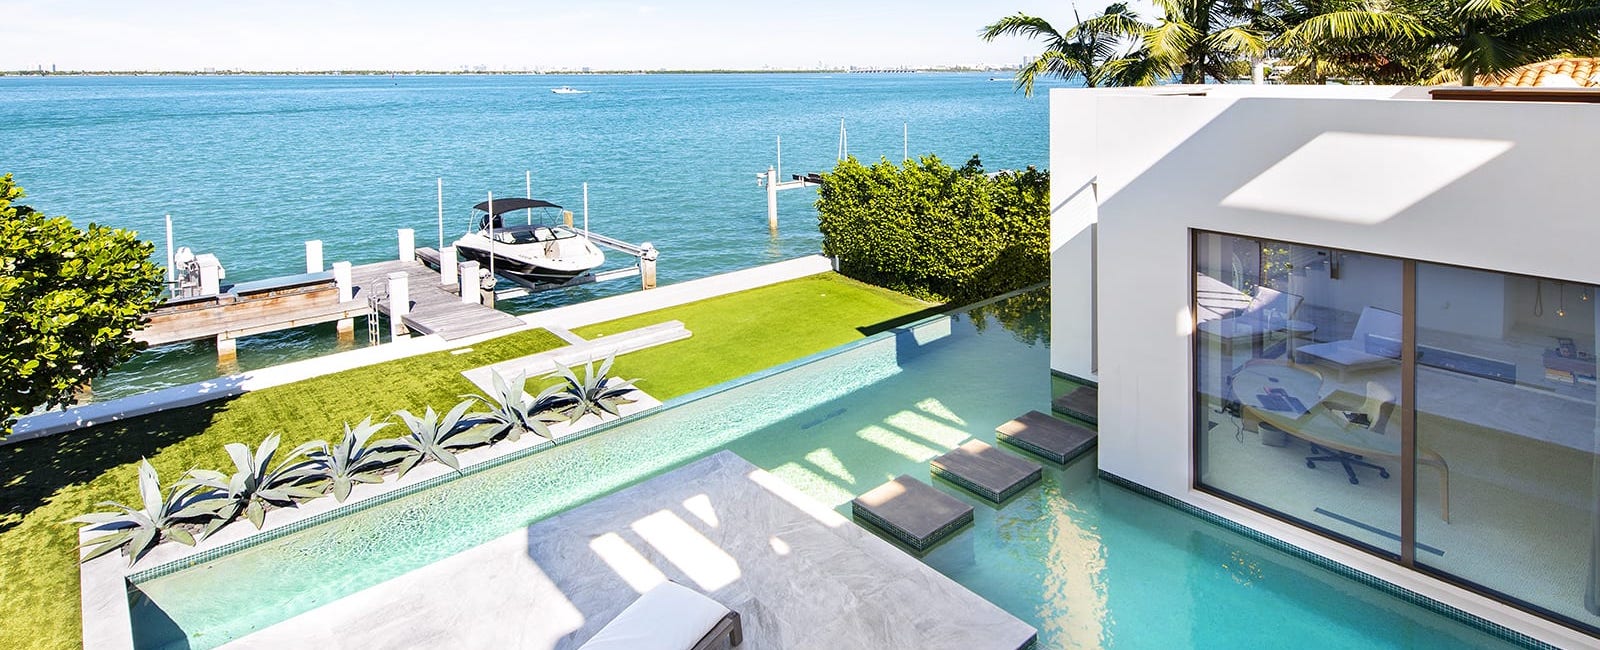 Luxury Vacation Rentals And Luxury Rentals Miami Sobevillas